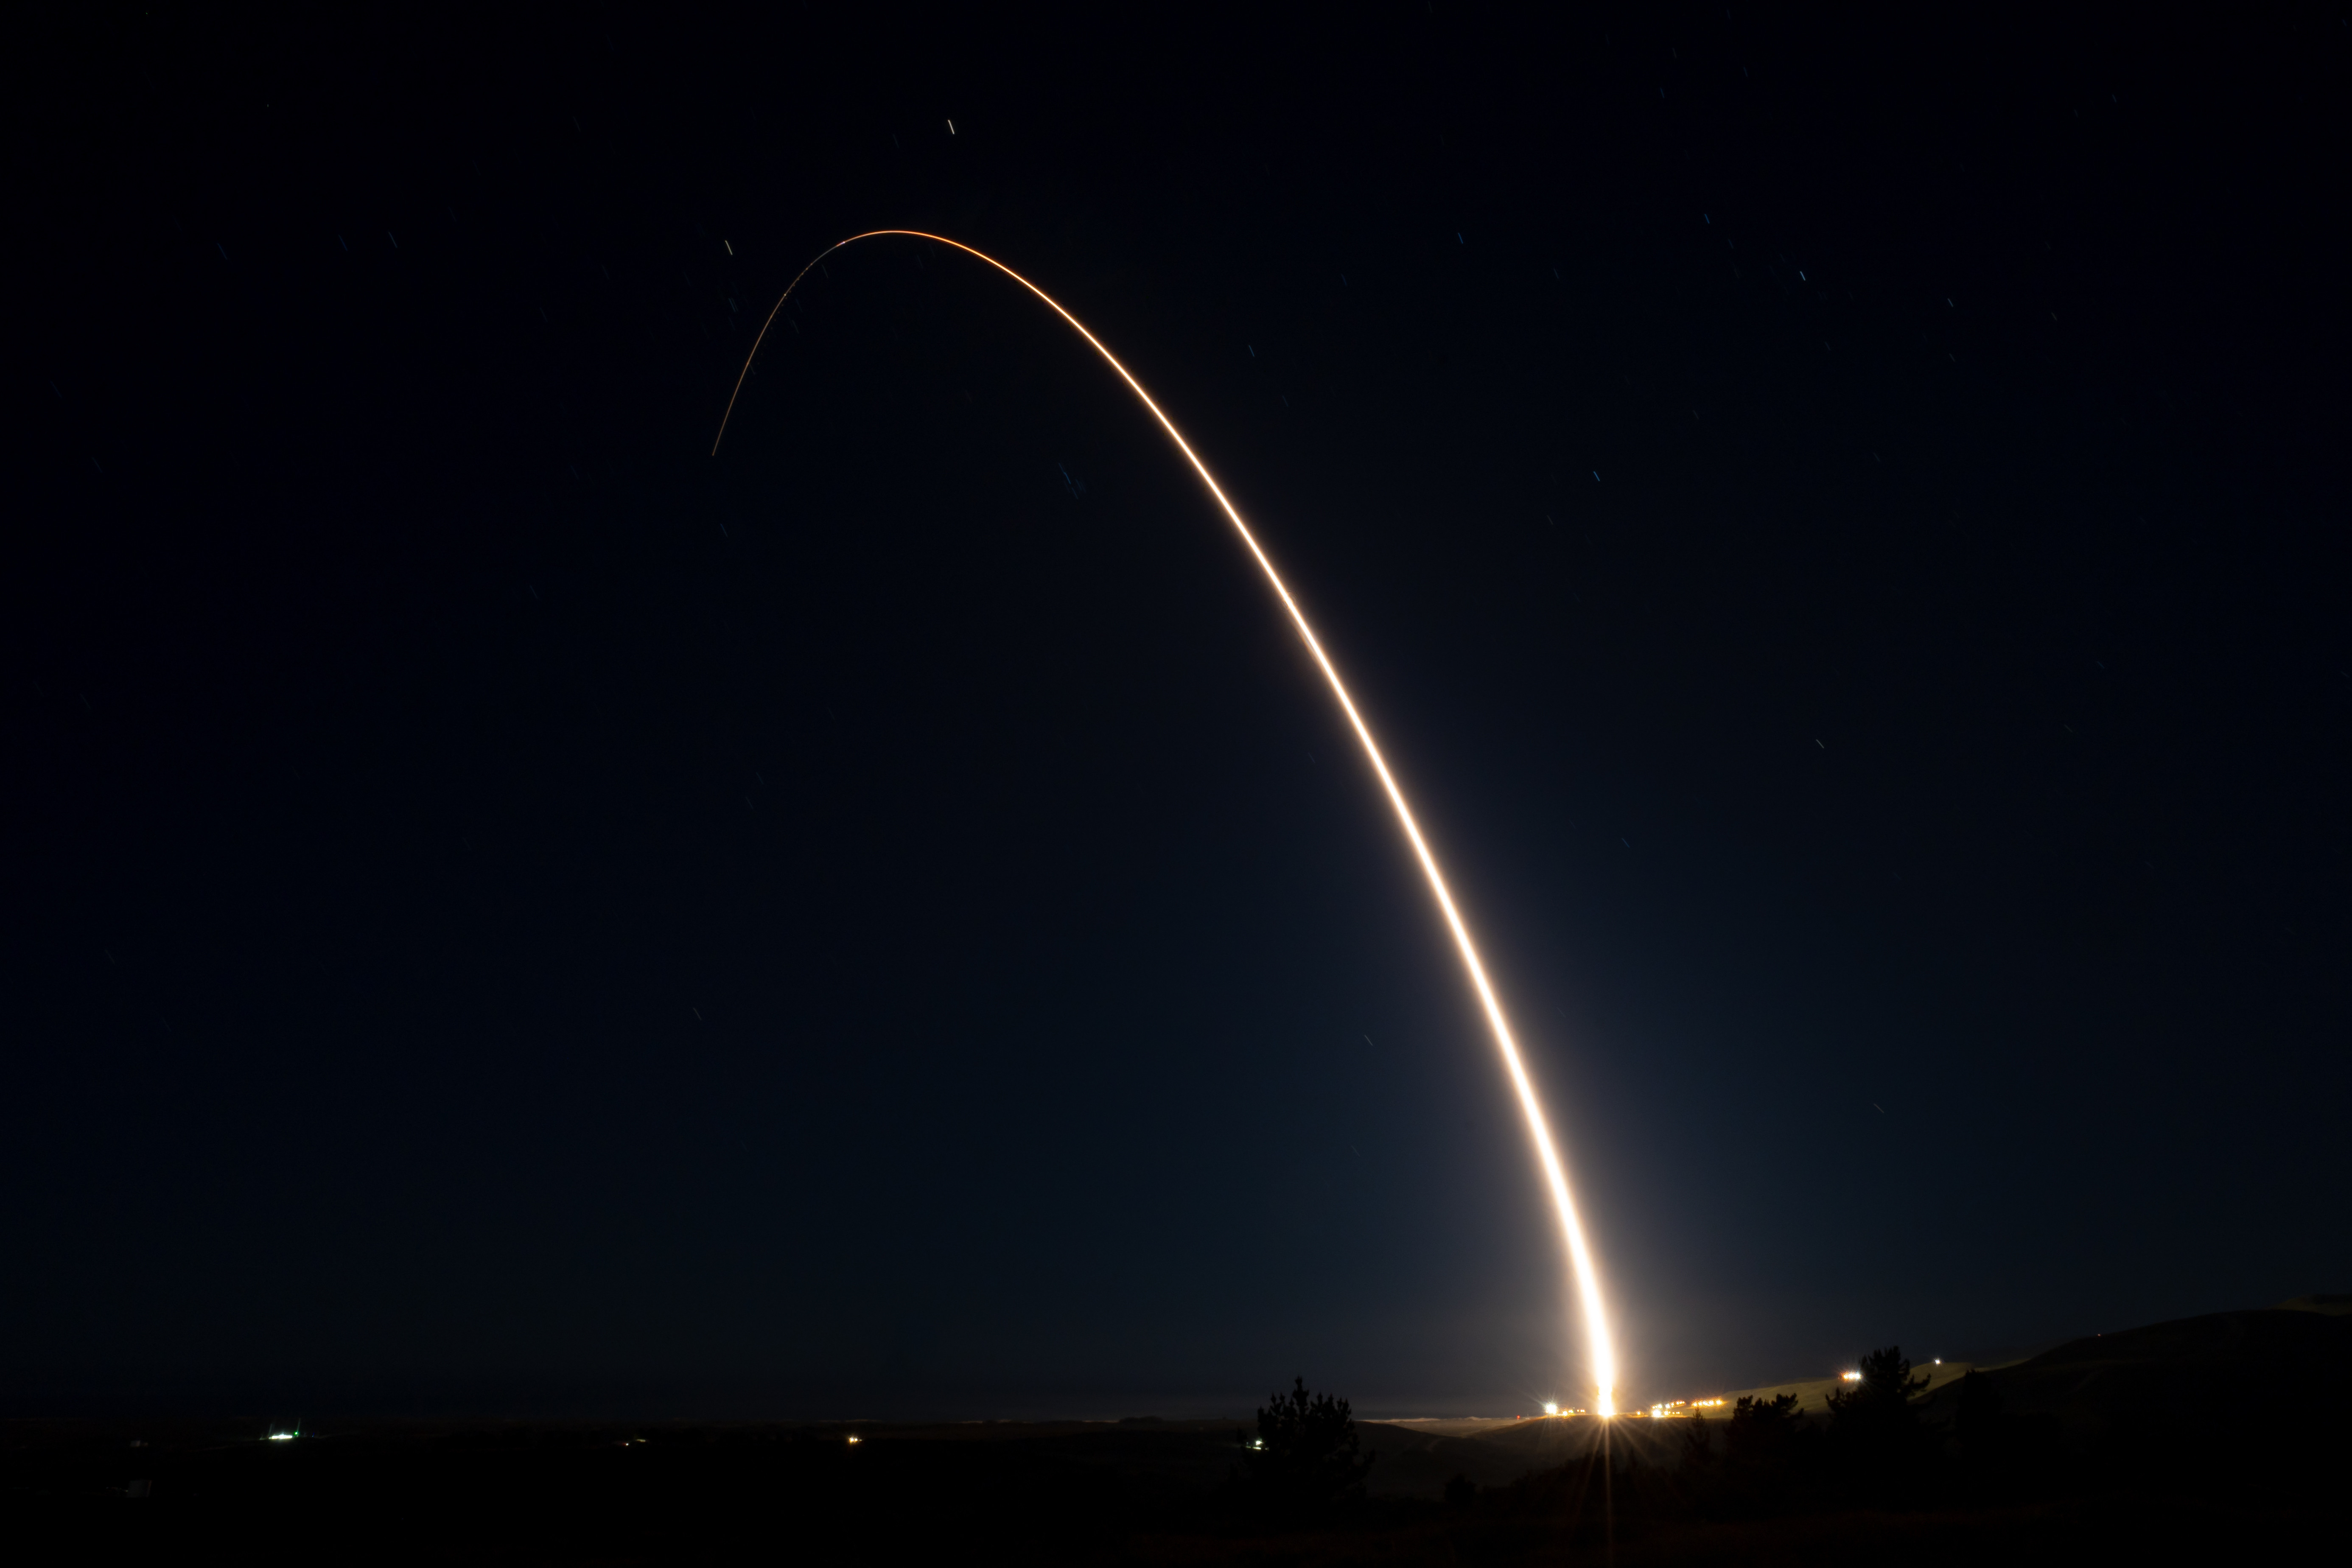 Відео: США успішно запустили міжконтинентальну балістичну ракету Minuteman III - снаряд без ядерної боєголовки пролетів понад 6700 км